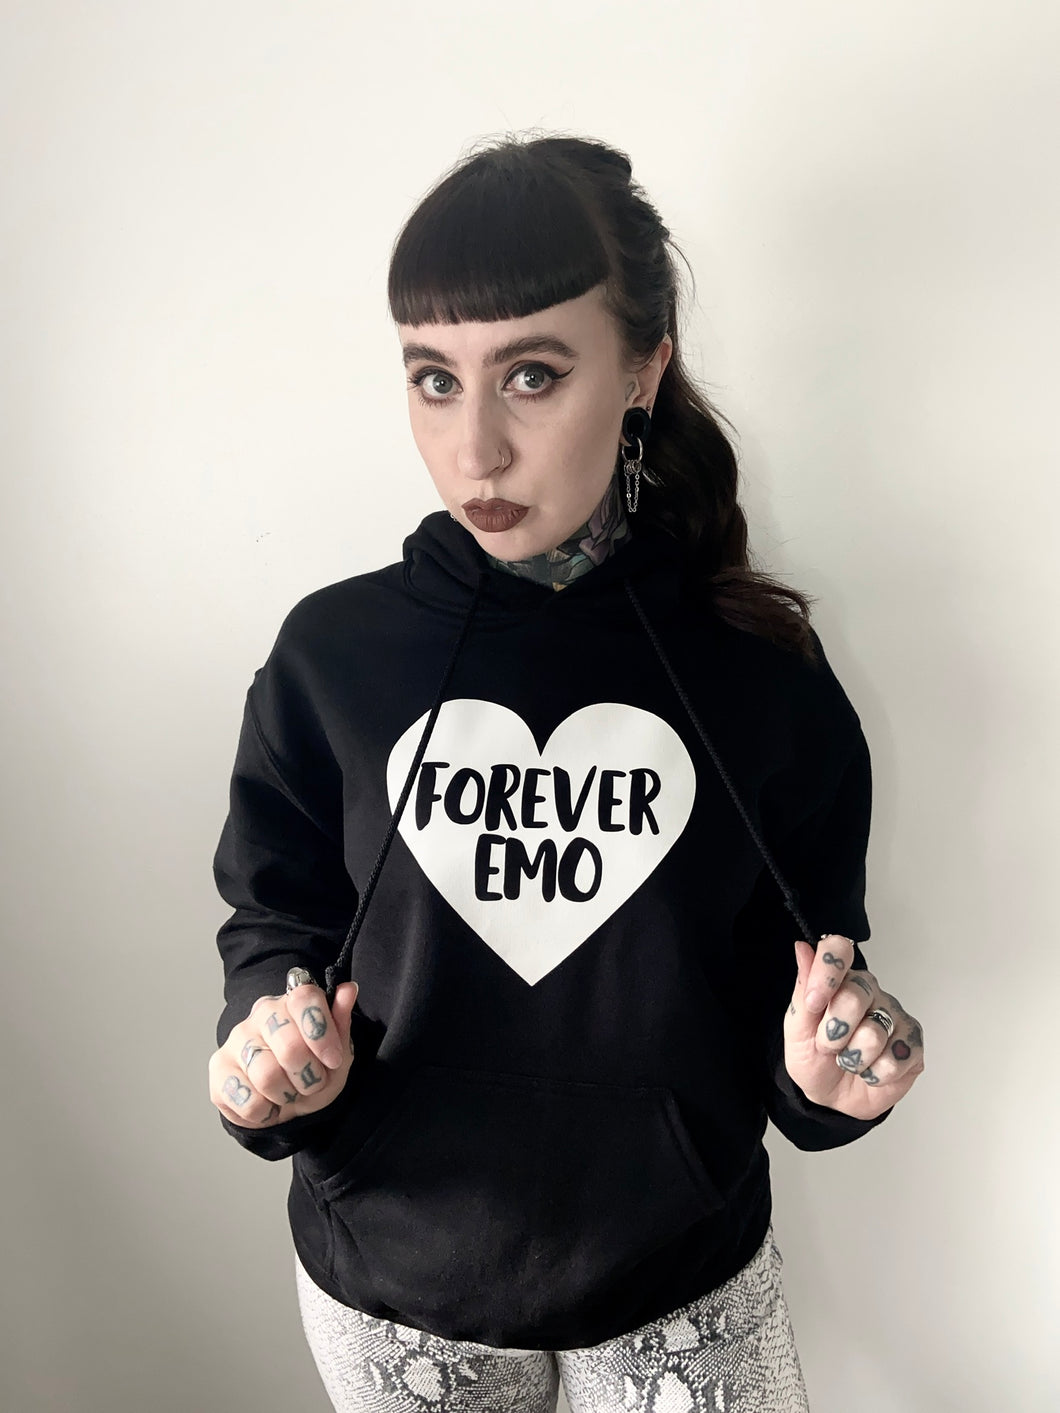 EMO forever